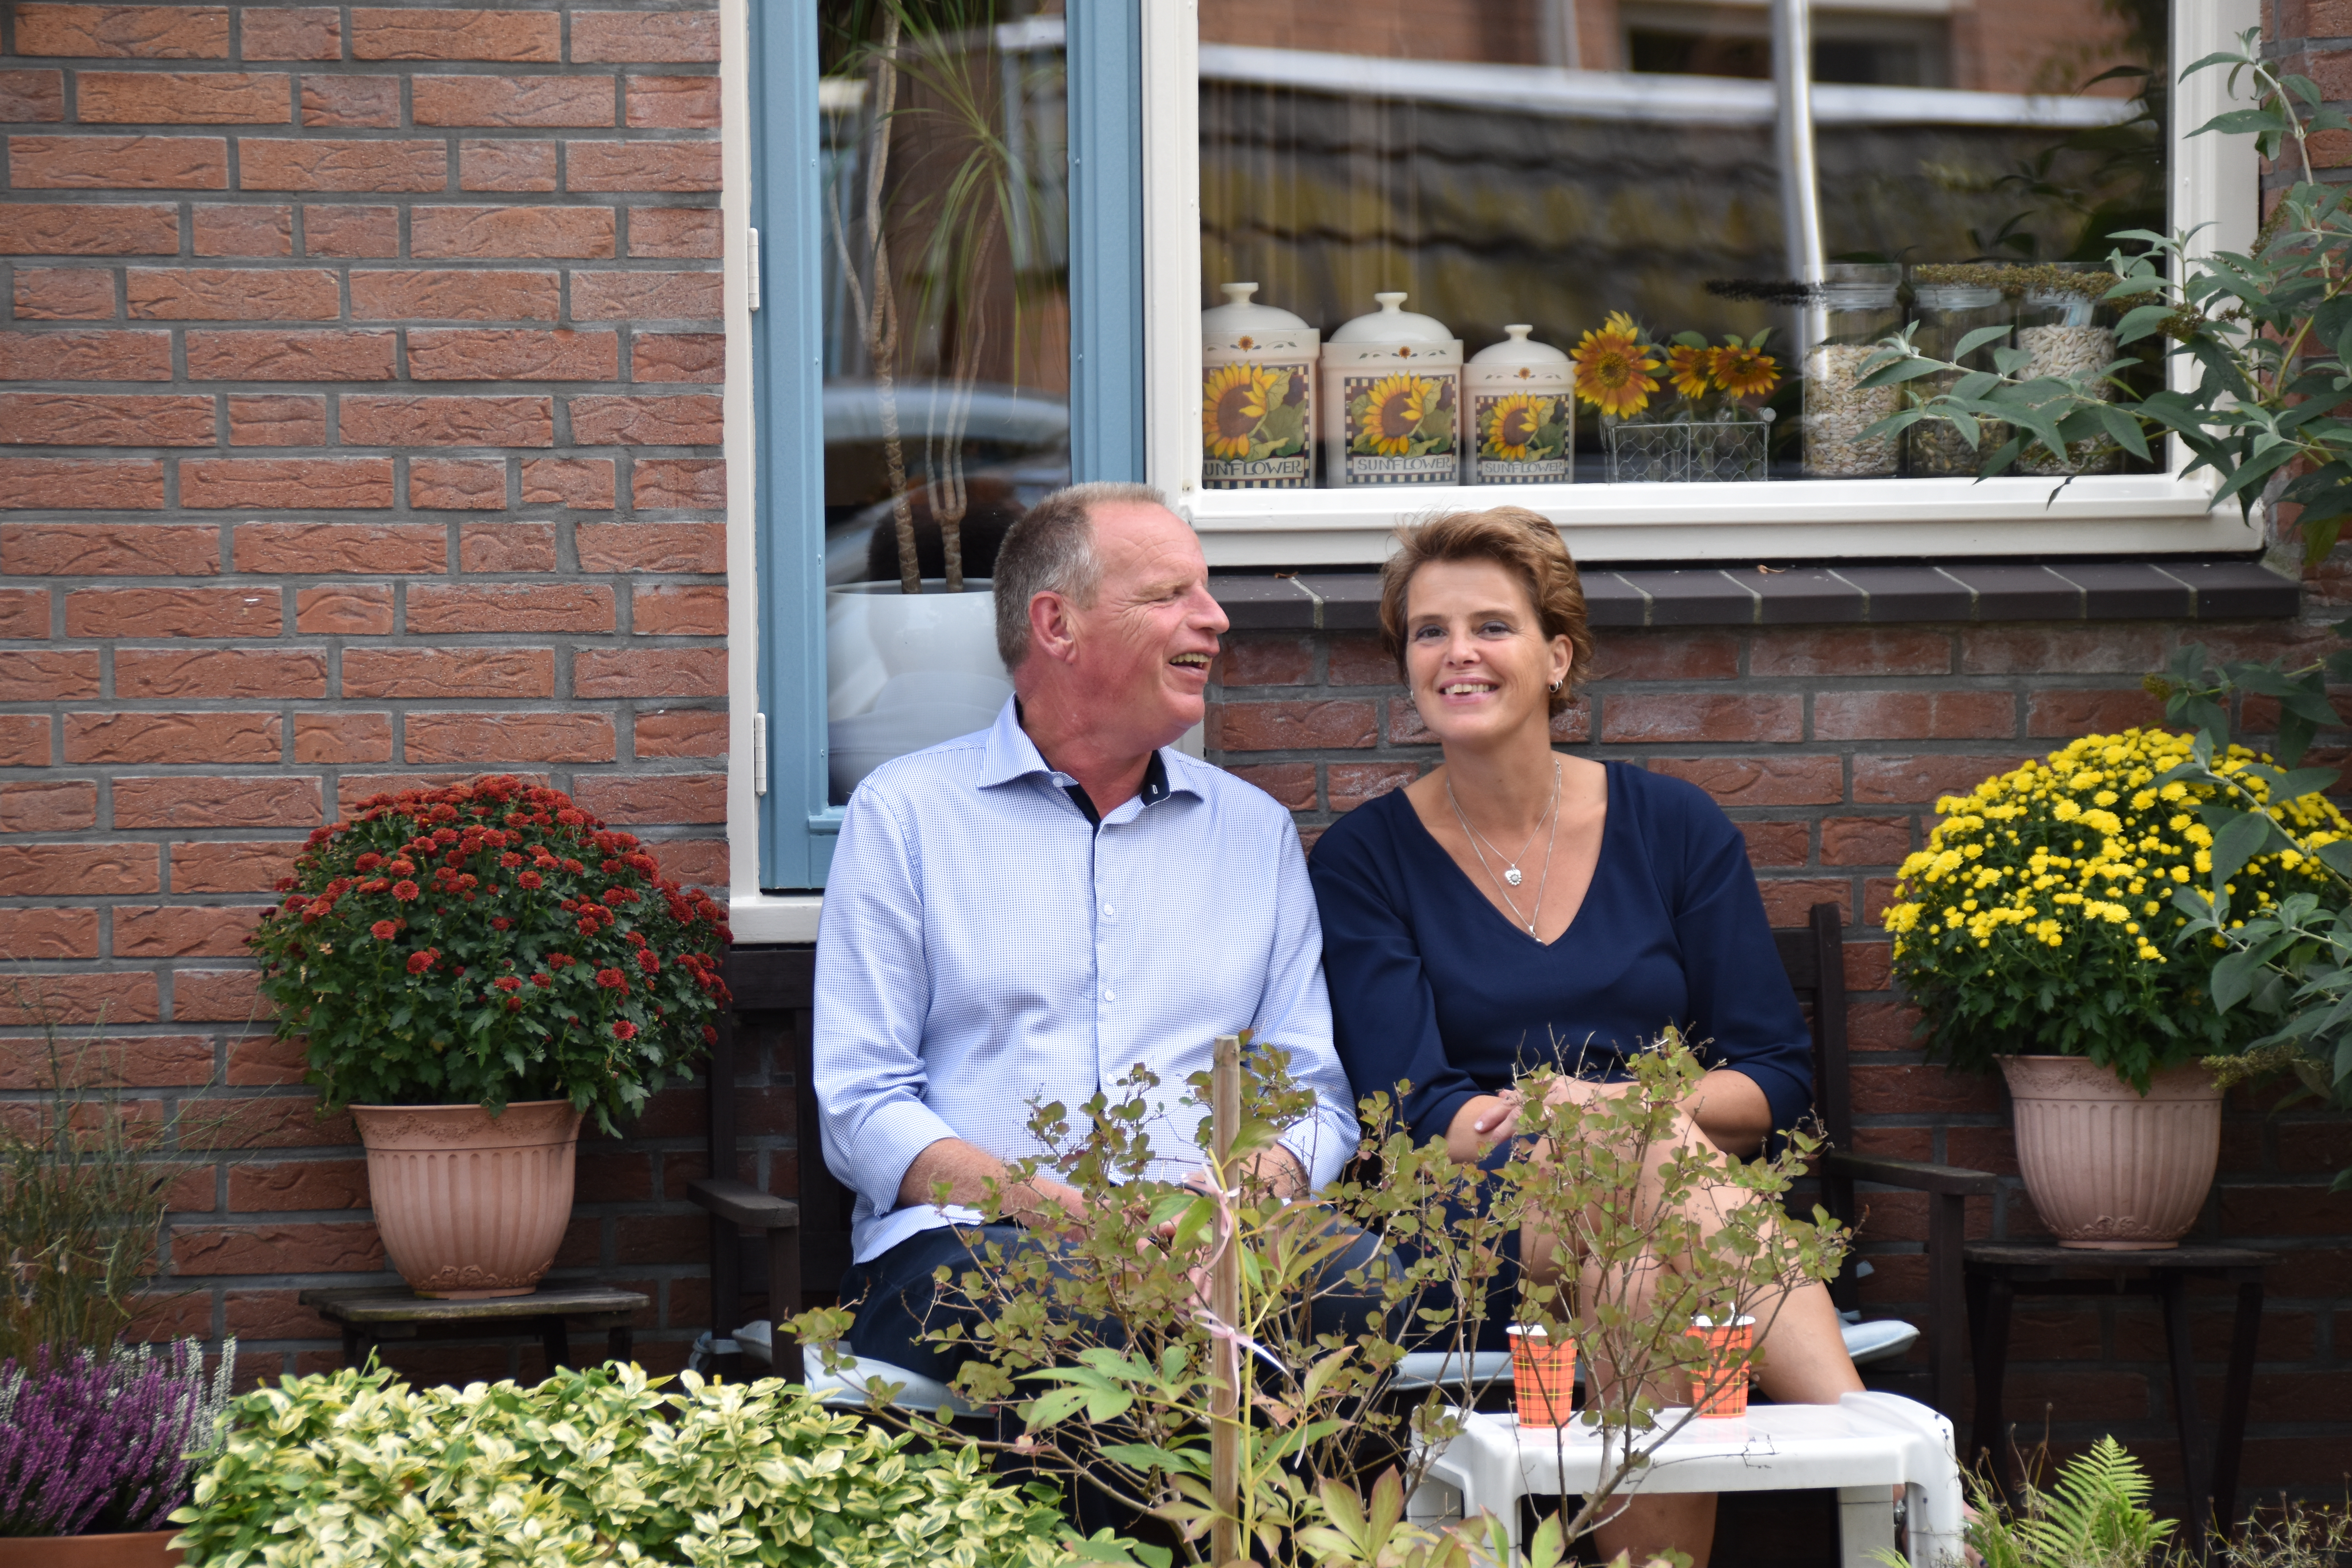 Jan zit naast Renate op een bankje in de tuin met bloemen om hen heen. Ze lachen allebei.